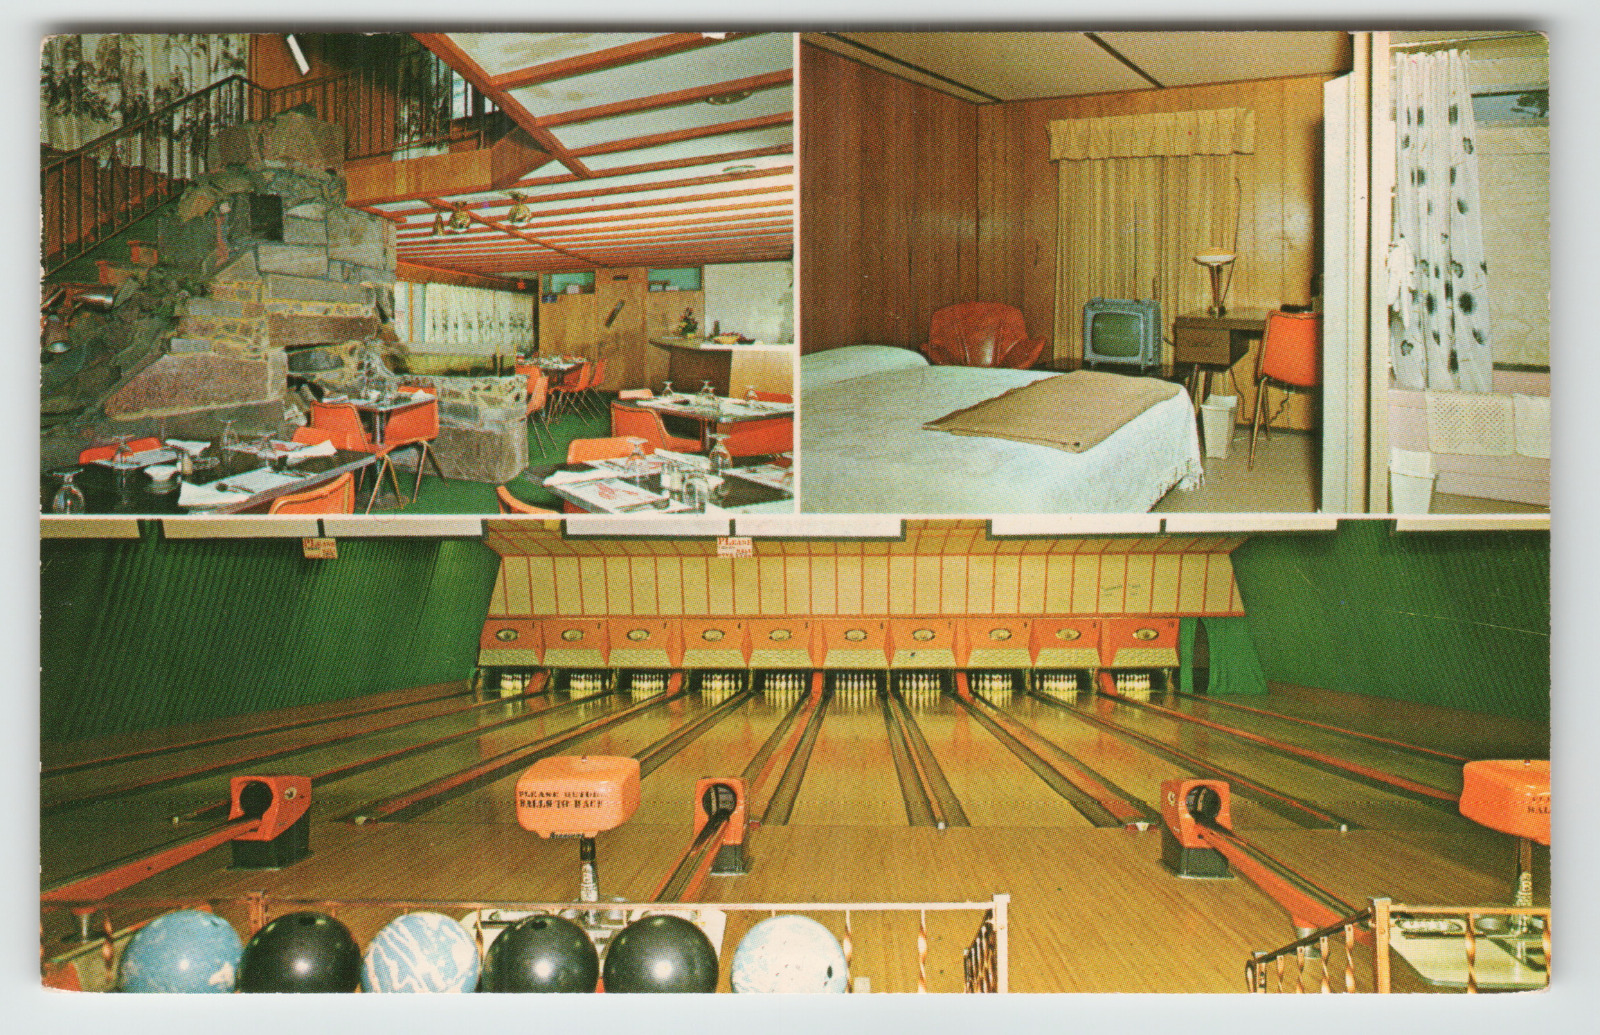 Postcard Vintage Dairy Center Motel & Restaurant in Enosburg Falls, VT